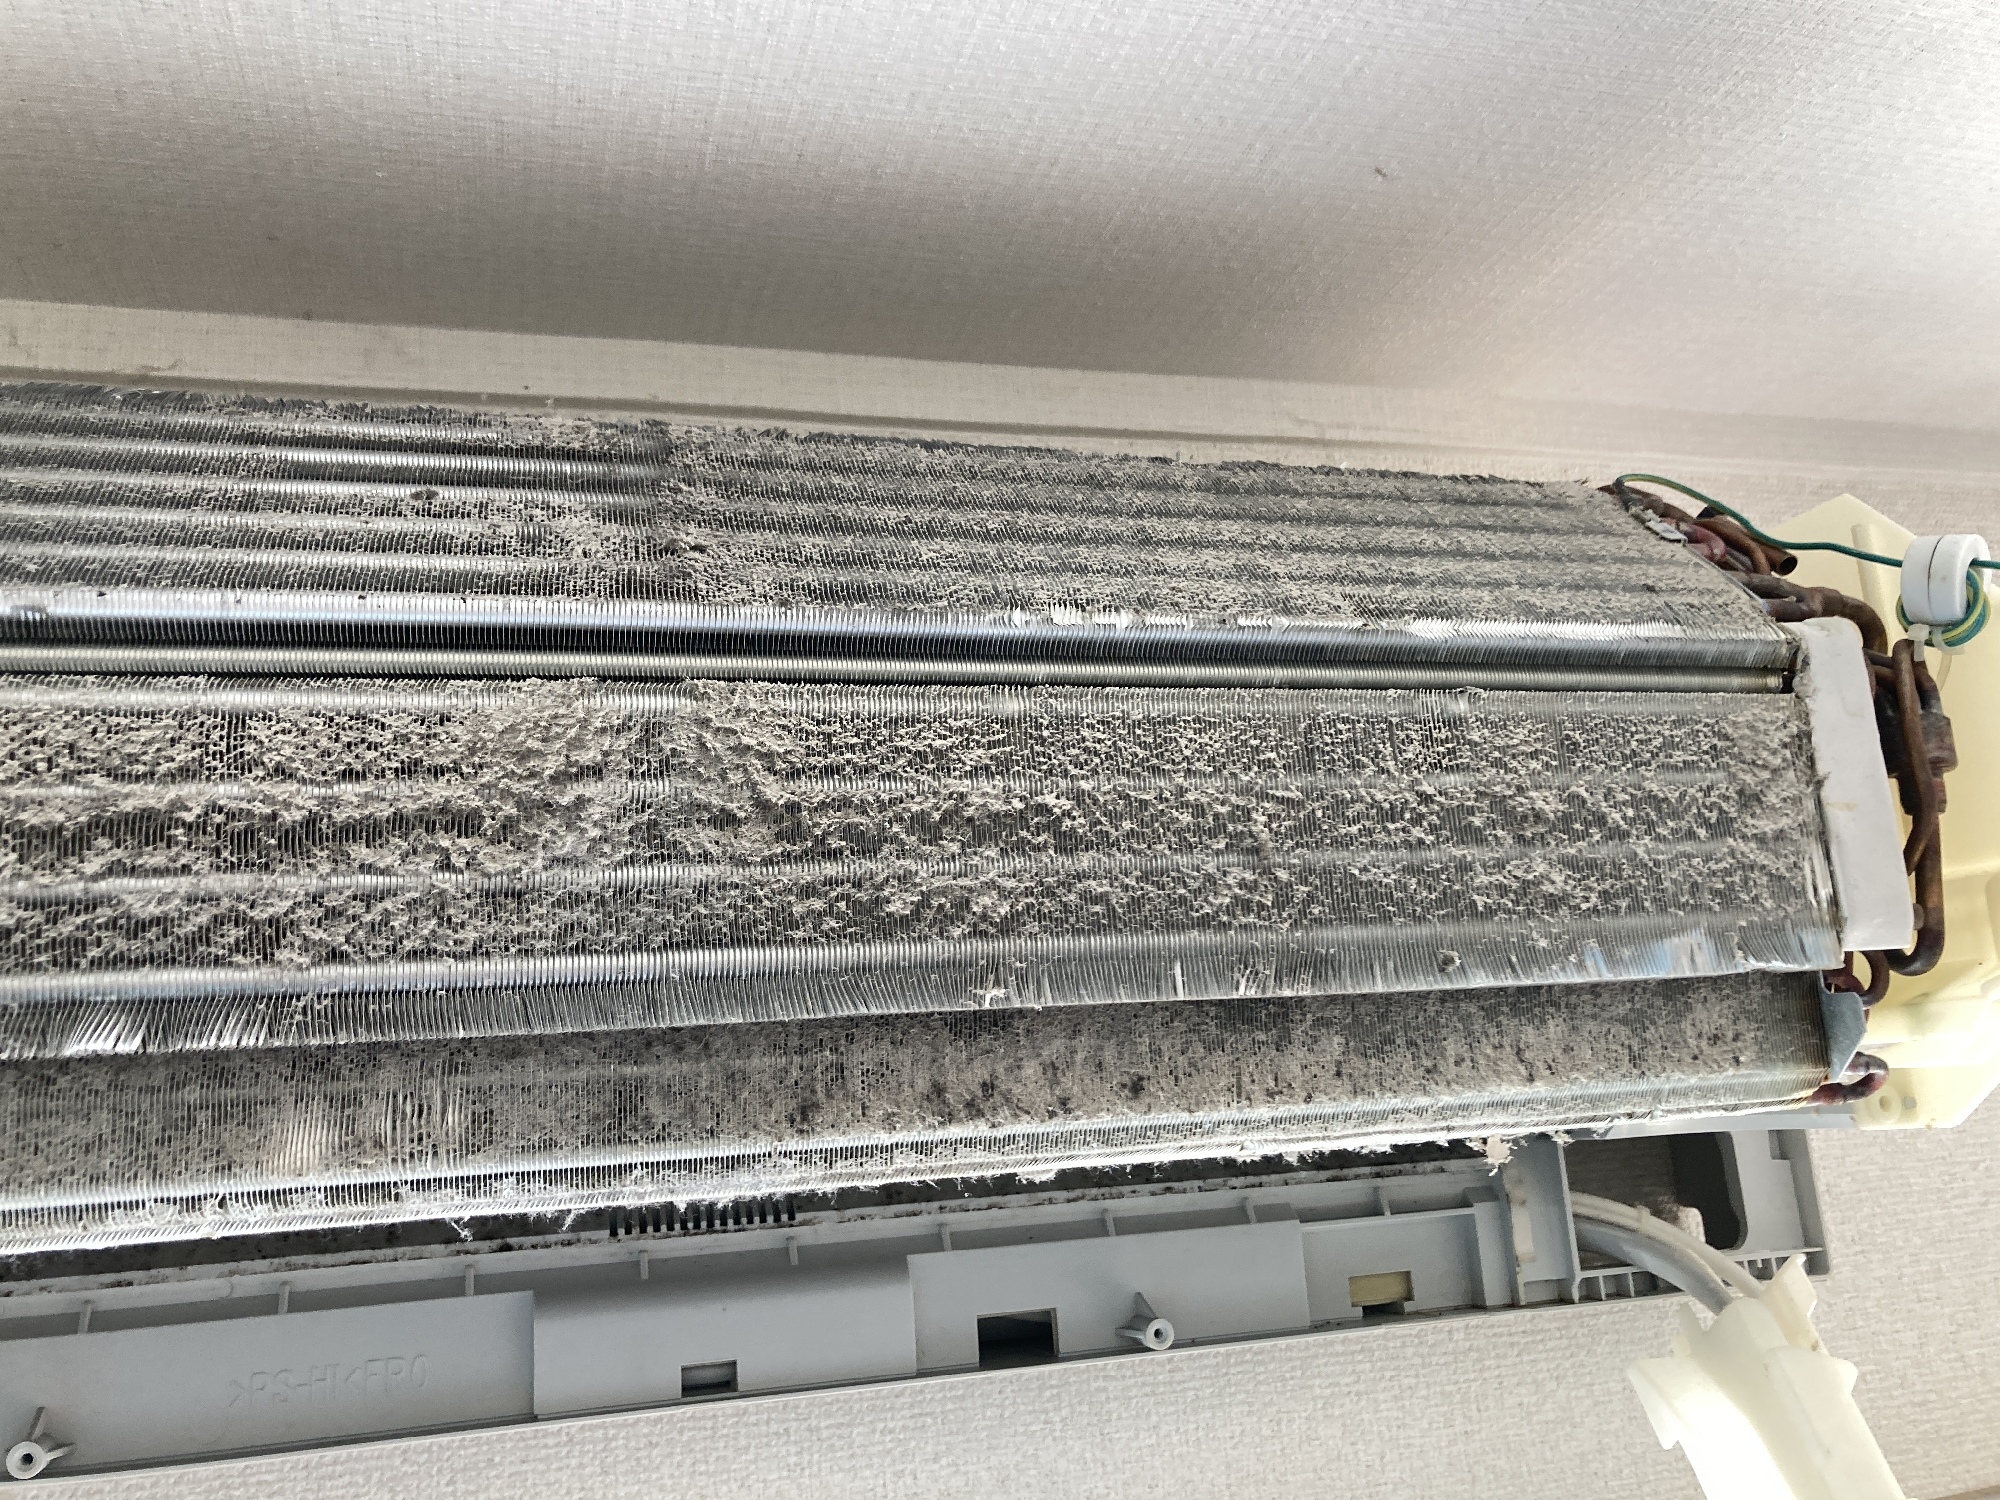 シャープ プラズマクラスターお掃除エアコン 徹底分解クリーニング ハウスクリーニング 鳥山修史 マイベストプロ神戸